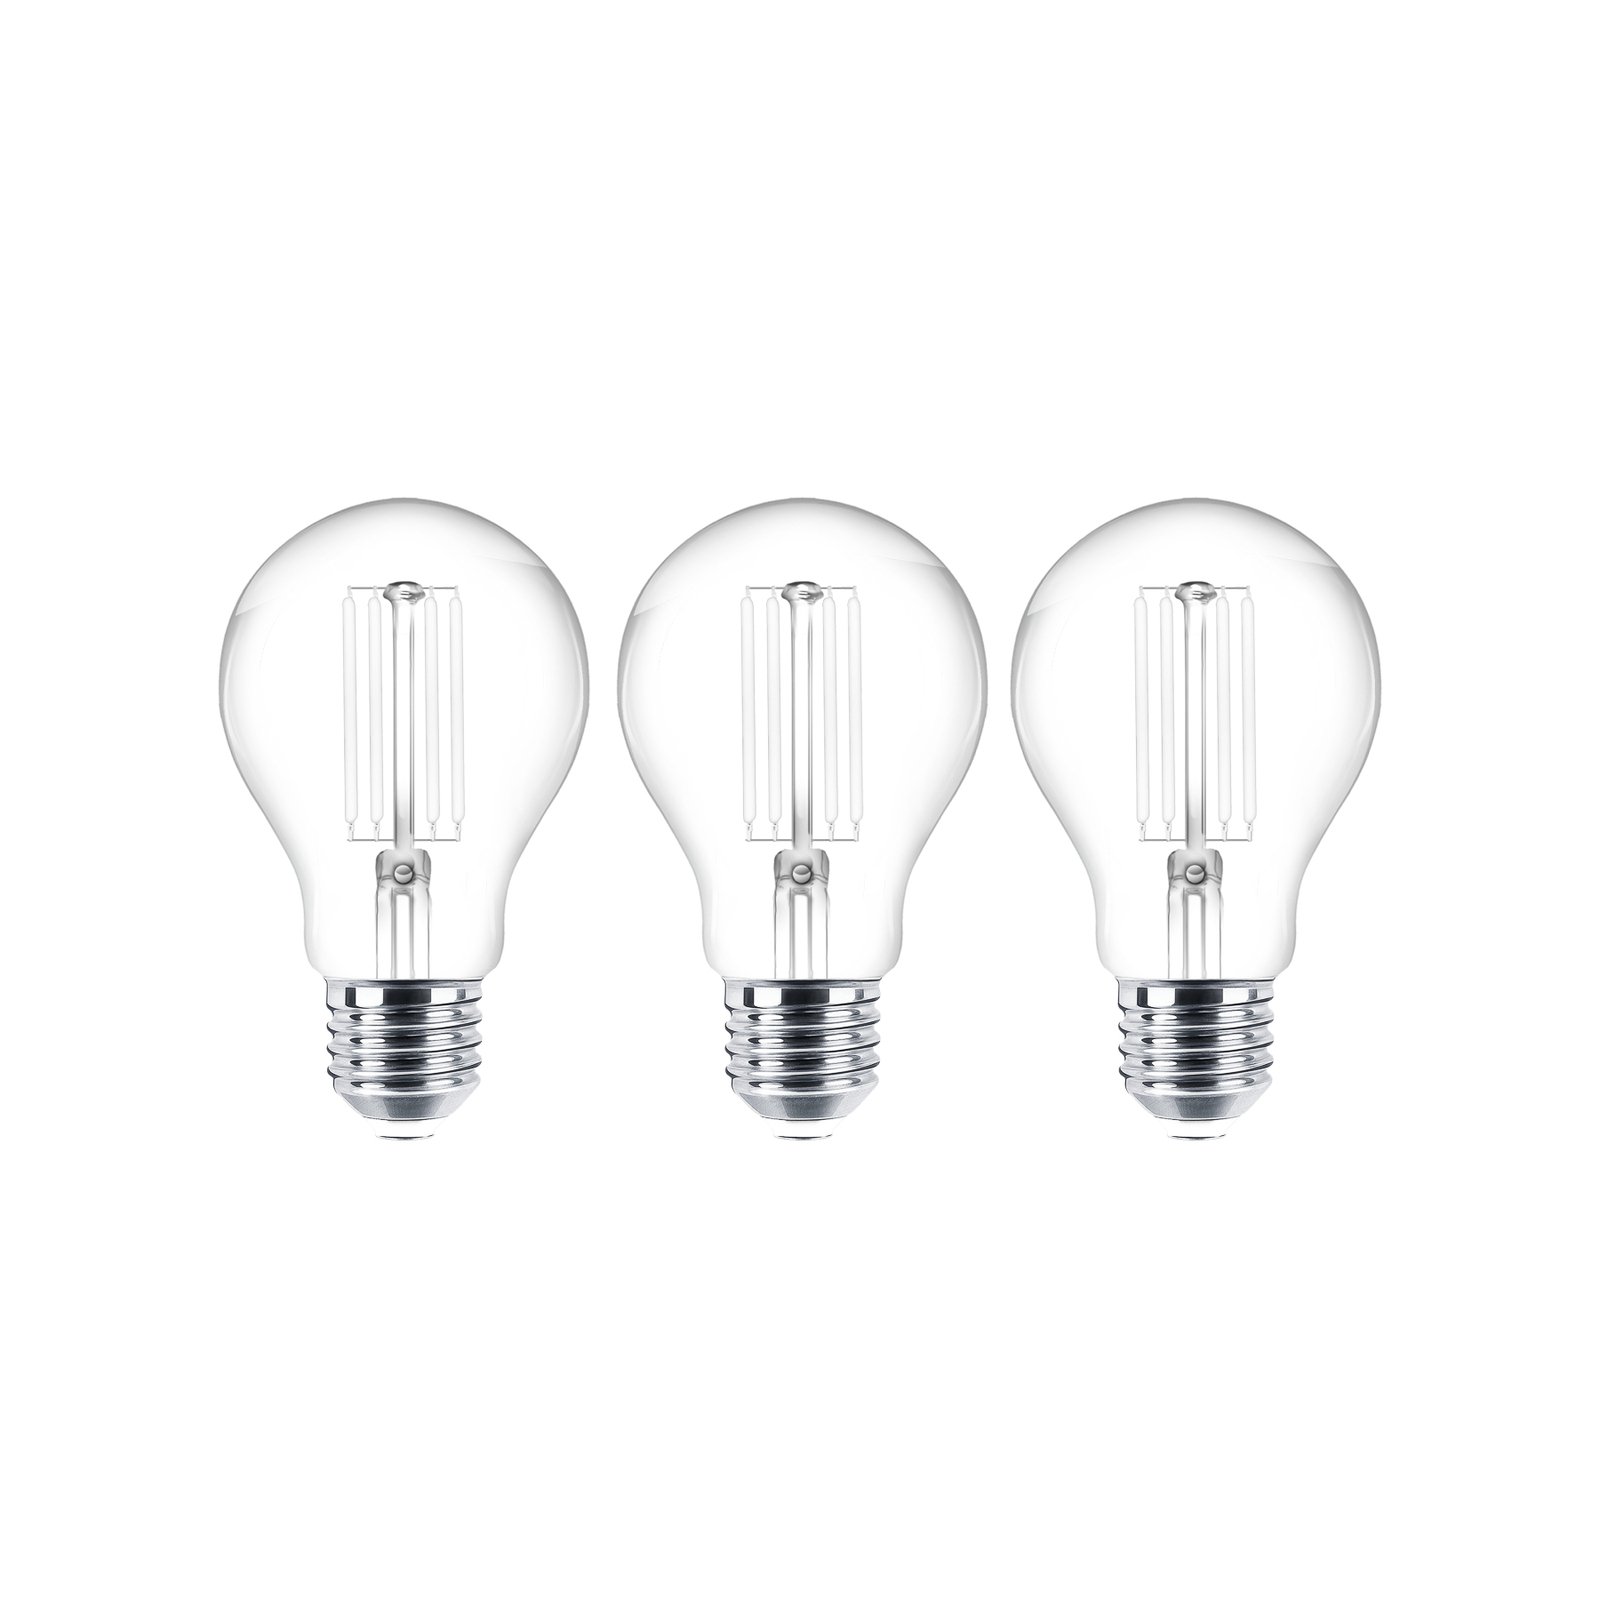 LED bulb Filament E27 set of 3 7W 806 lm clear 2,700K